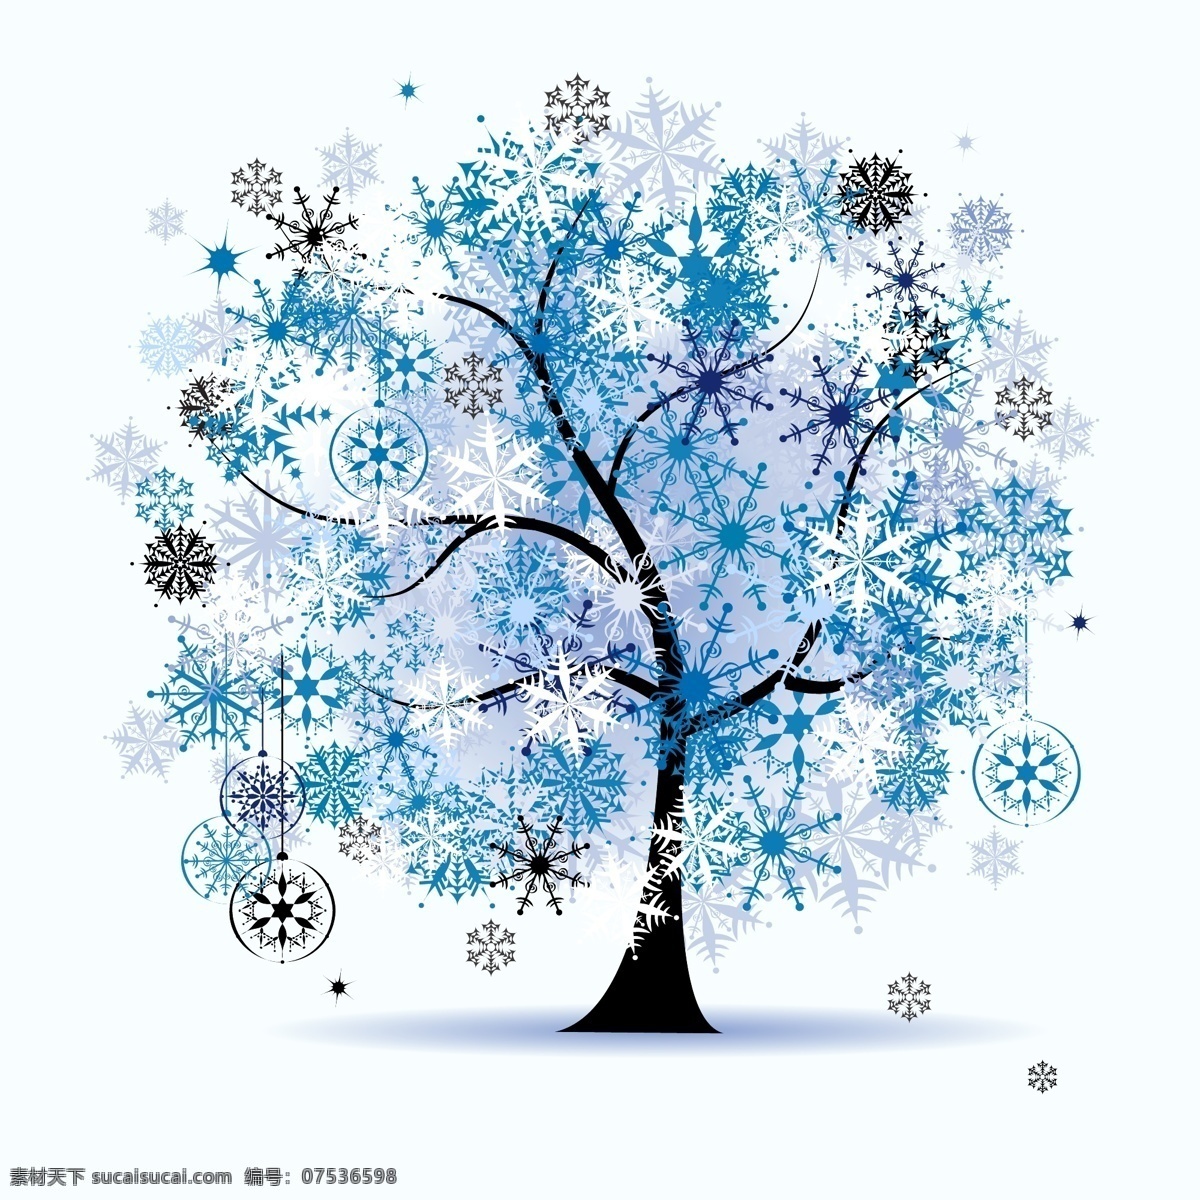 四季 气息 缤纷 彩色 树 矢量 eps格式 春 冬 可爱 秋 矢量素材 夏 自然 矢量图 其他矢量图